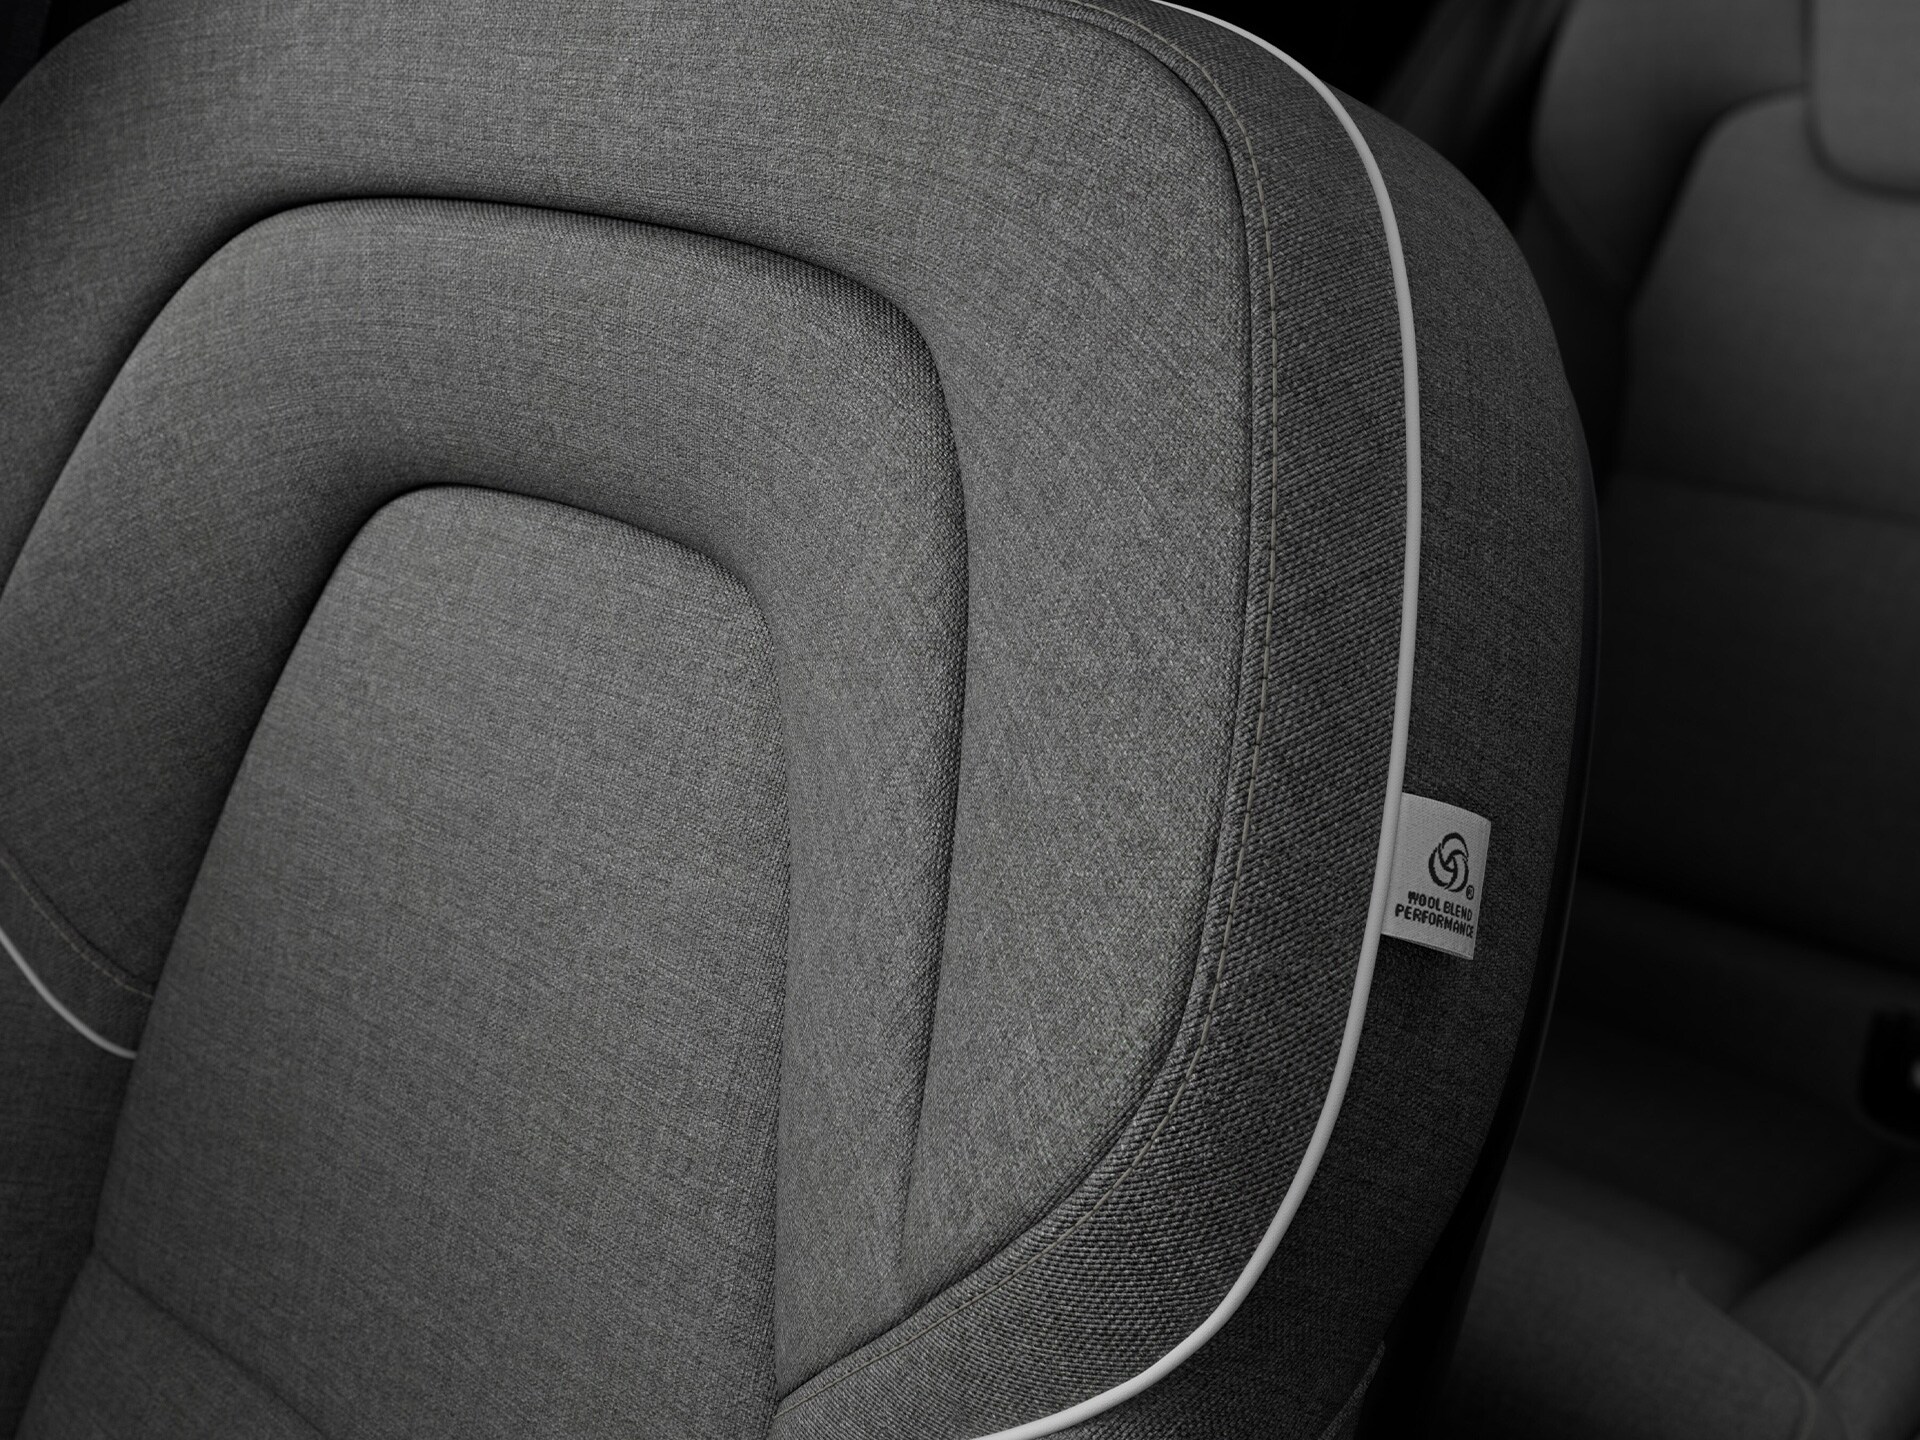 Vakmanschap en respect voor natuurlijke materialen staan centraal in het interieur van de Volvo V90 Recharge.